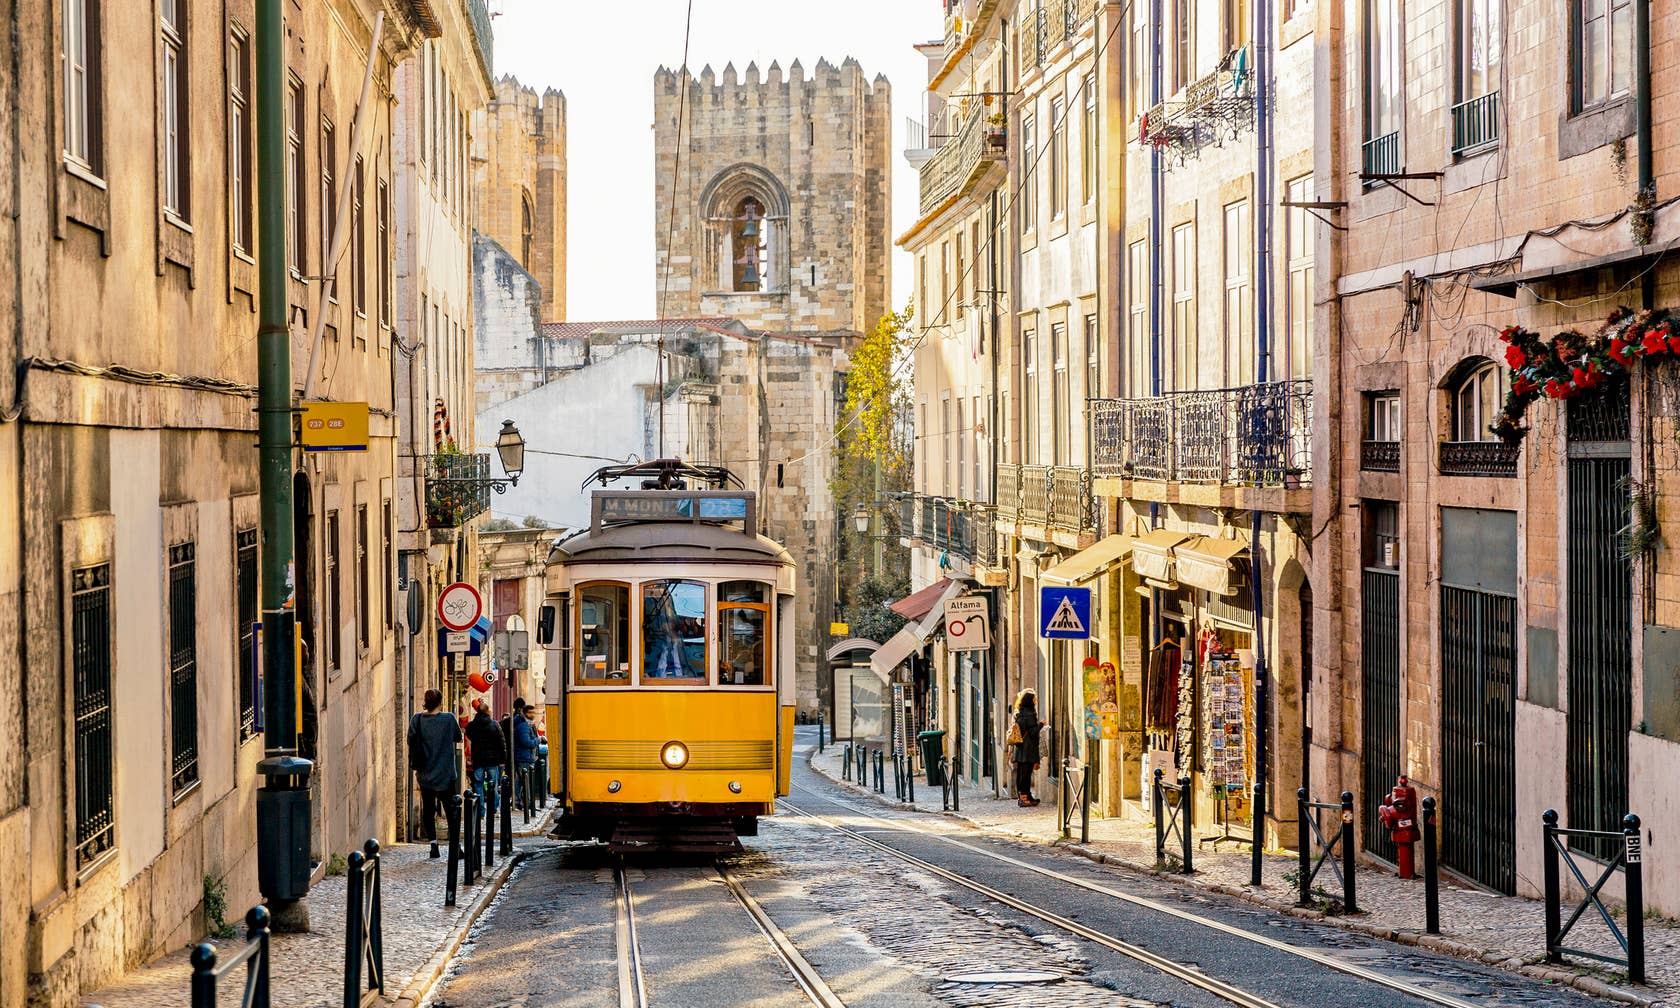 Ferienunterkünfte in Lissabon